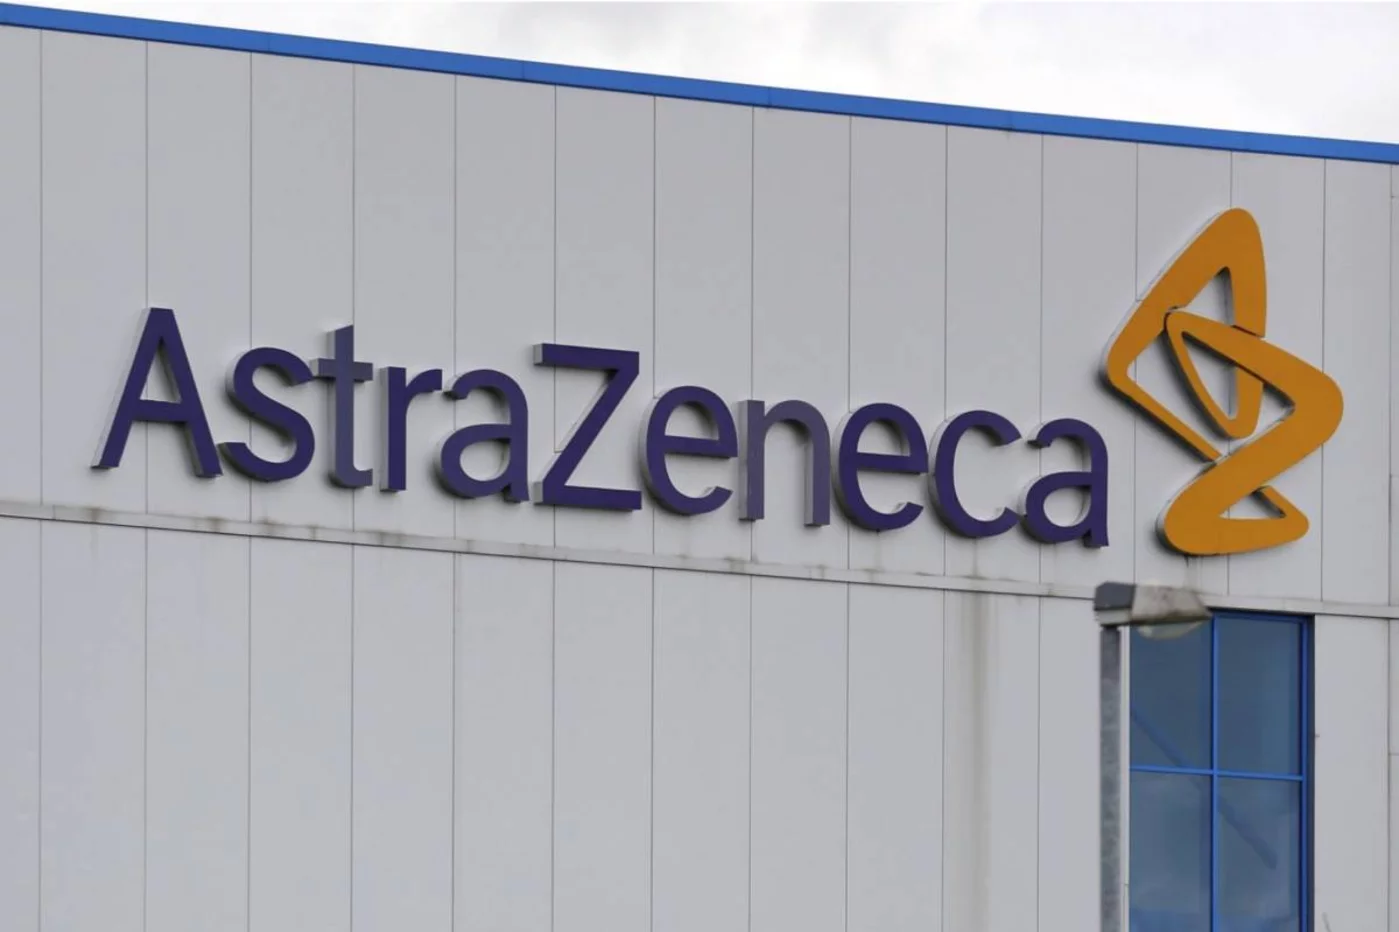 AstraZeneca adquirirá todas las acciones en circulación de Neogene por una contraprestación total de hasta 320 millones de dólares. Foto: PAUL THOMAS.